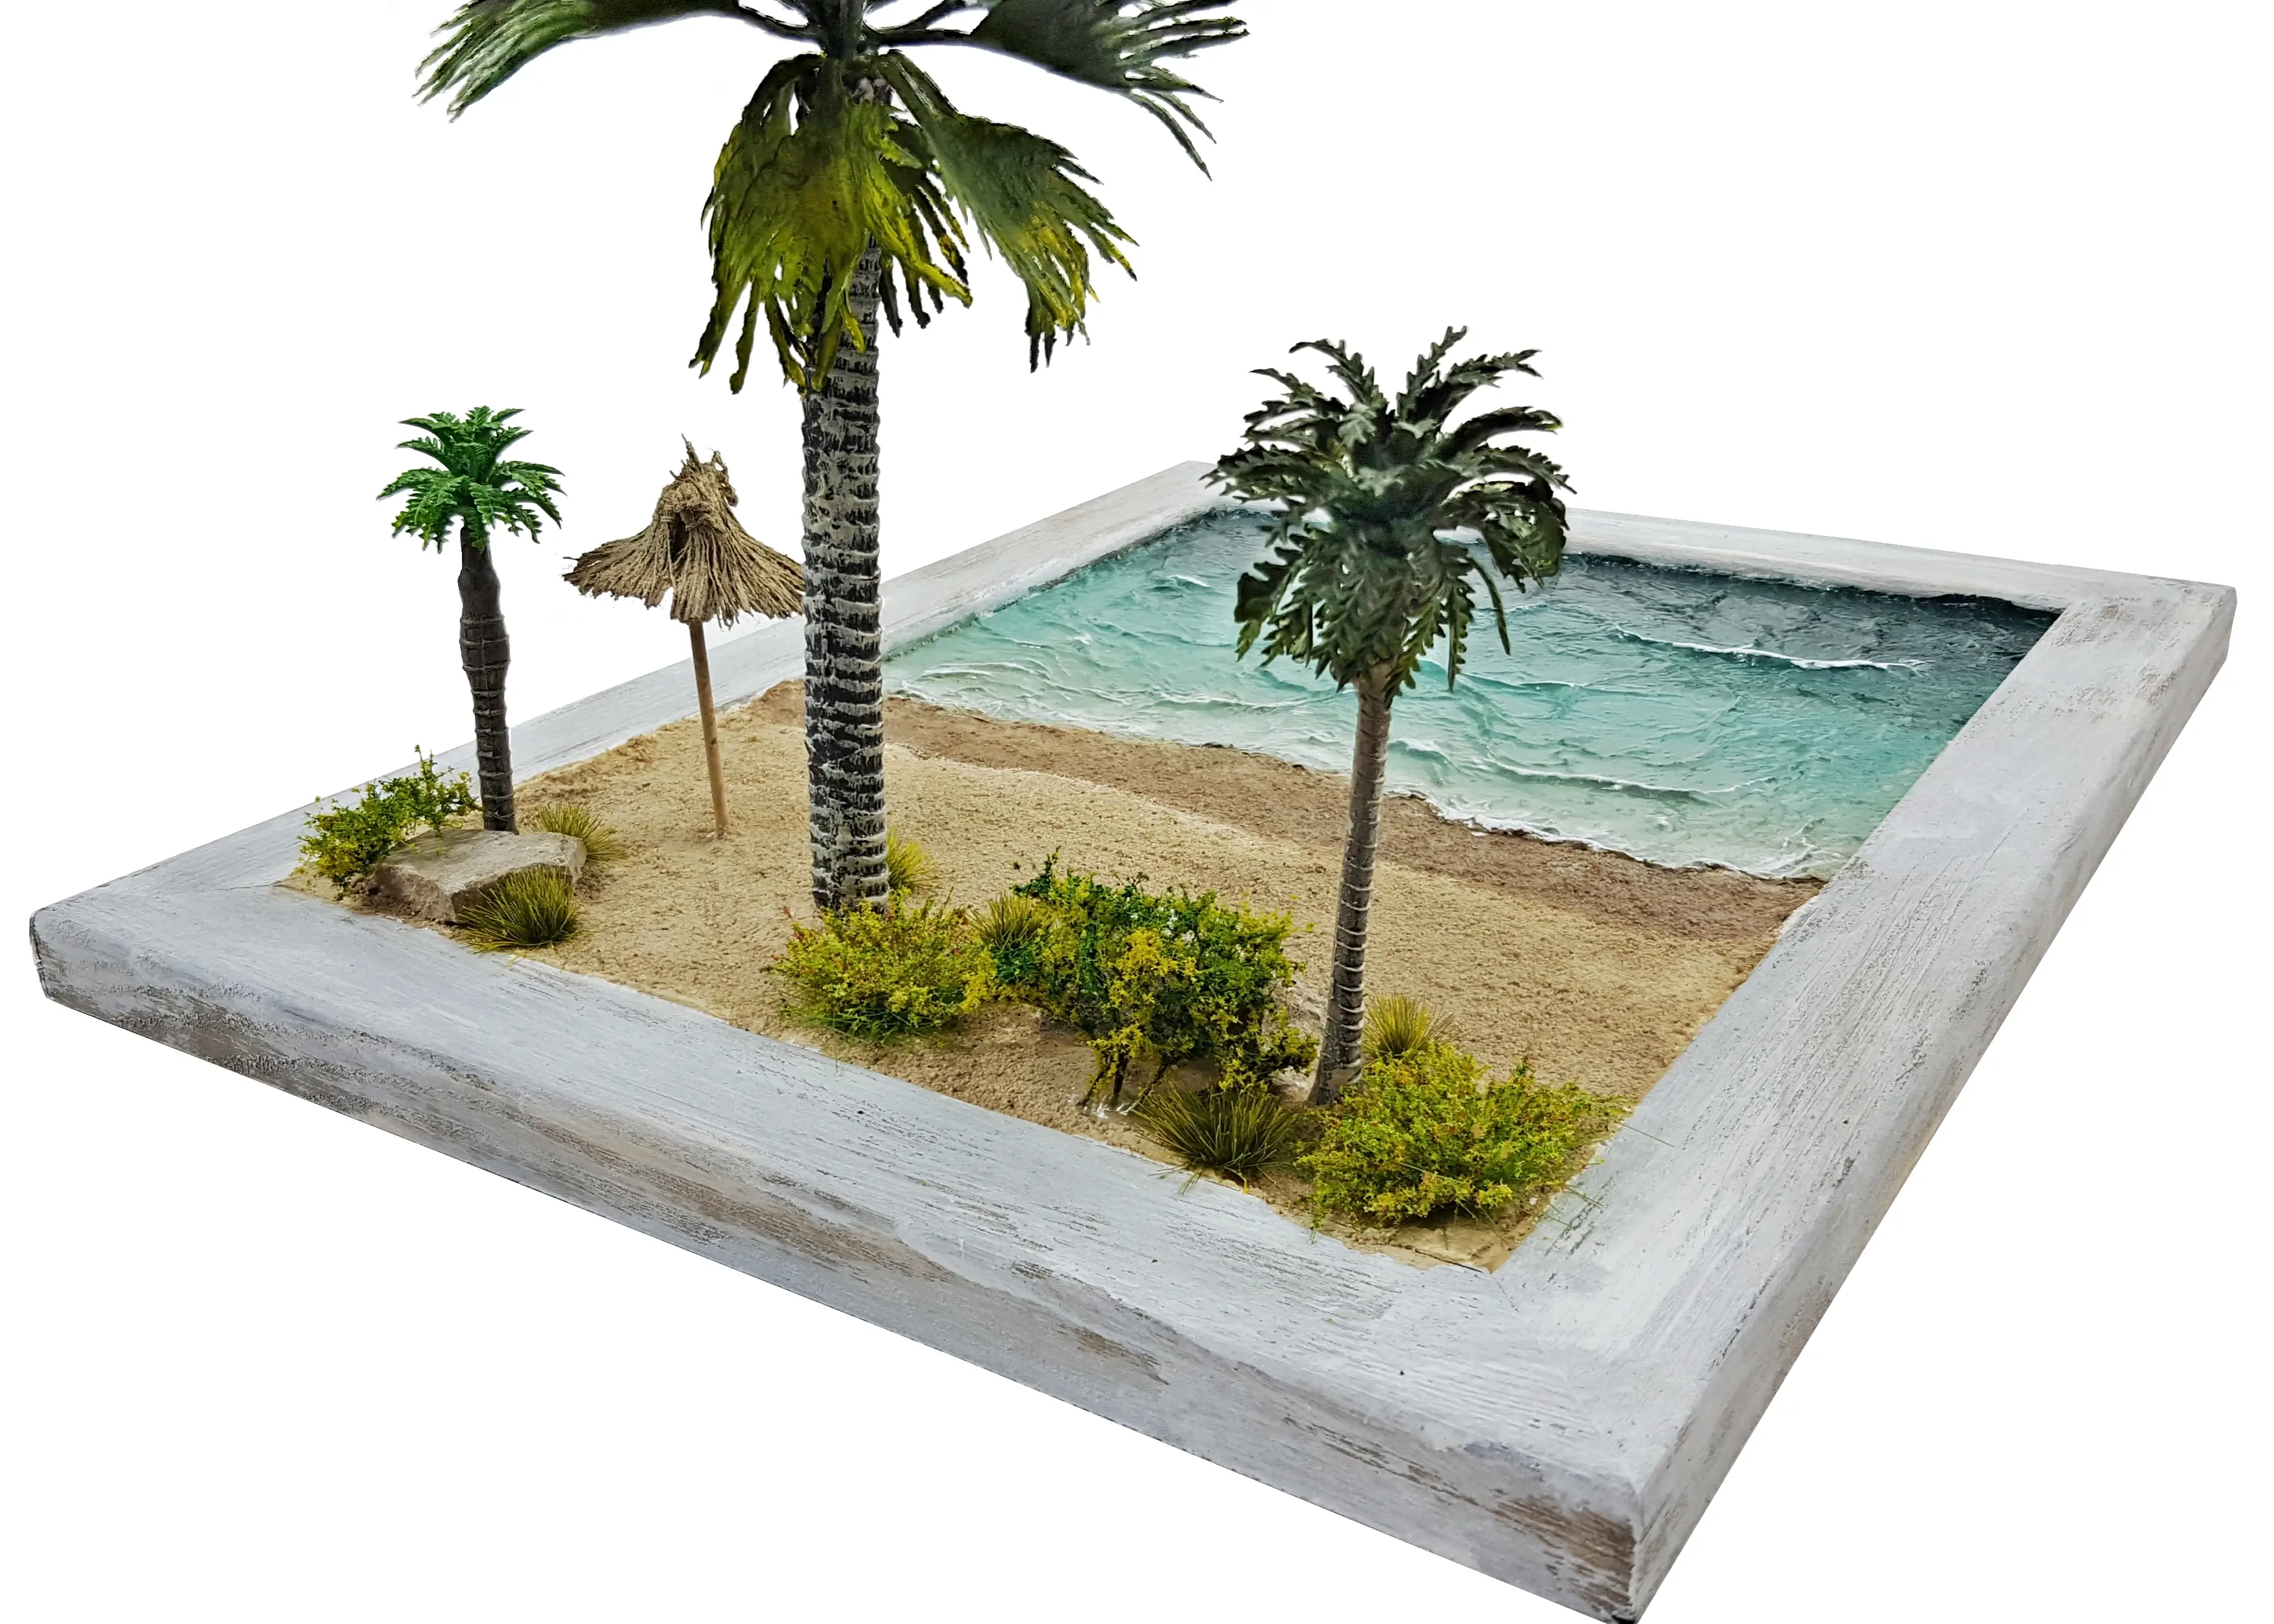 Tropical scenery miniature diorama